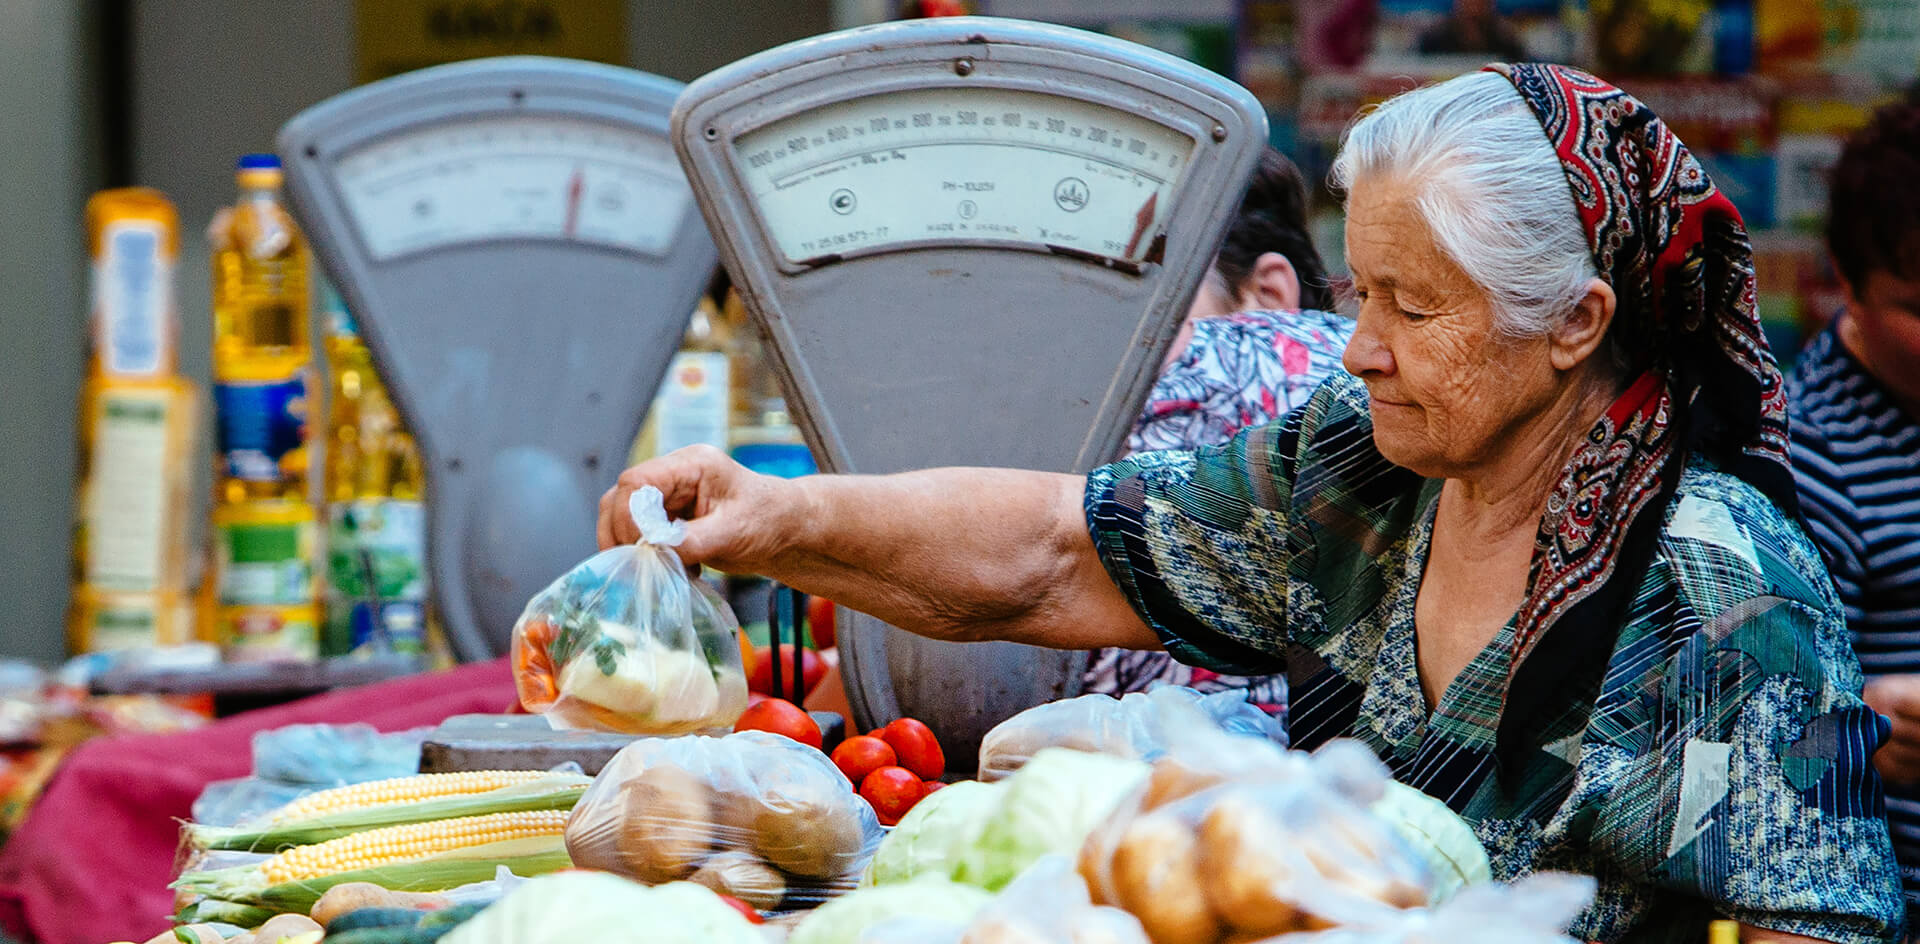 Хабаровские пенсионеры остаются без заработка из-за делёжки крупного рынка